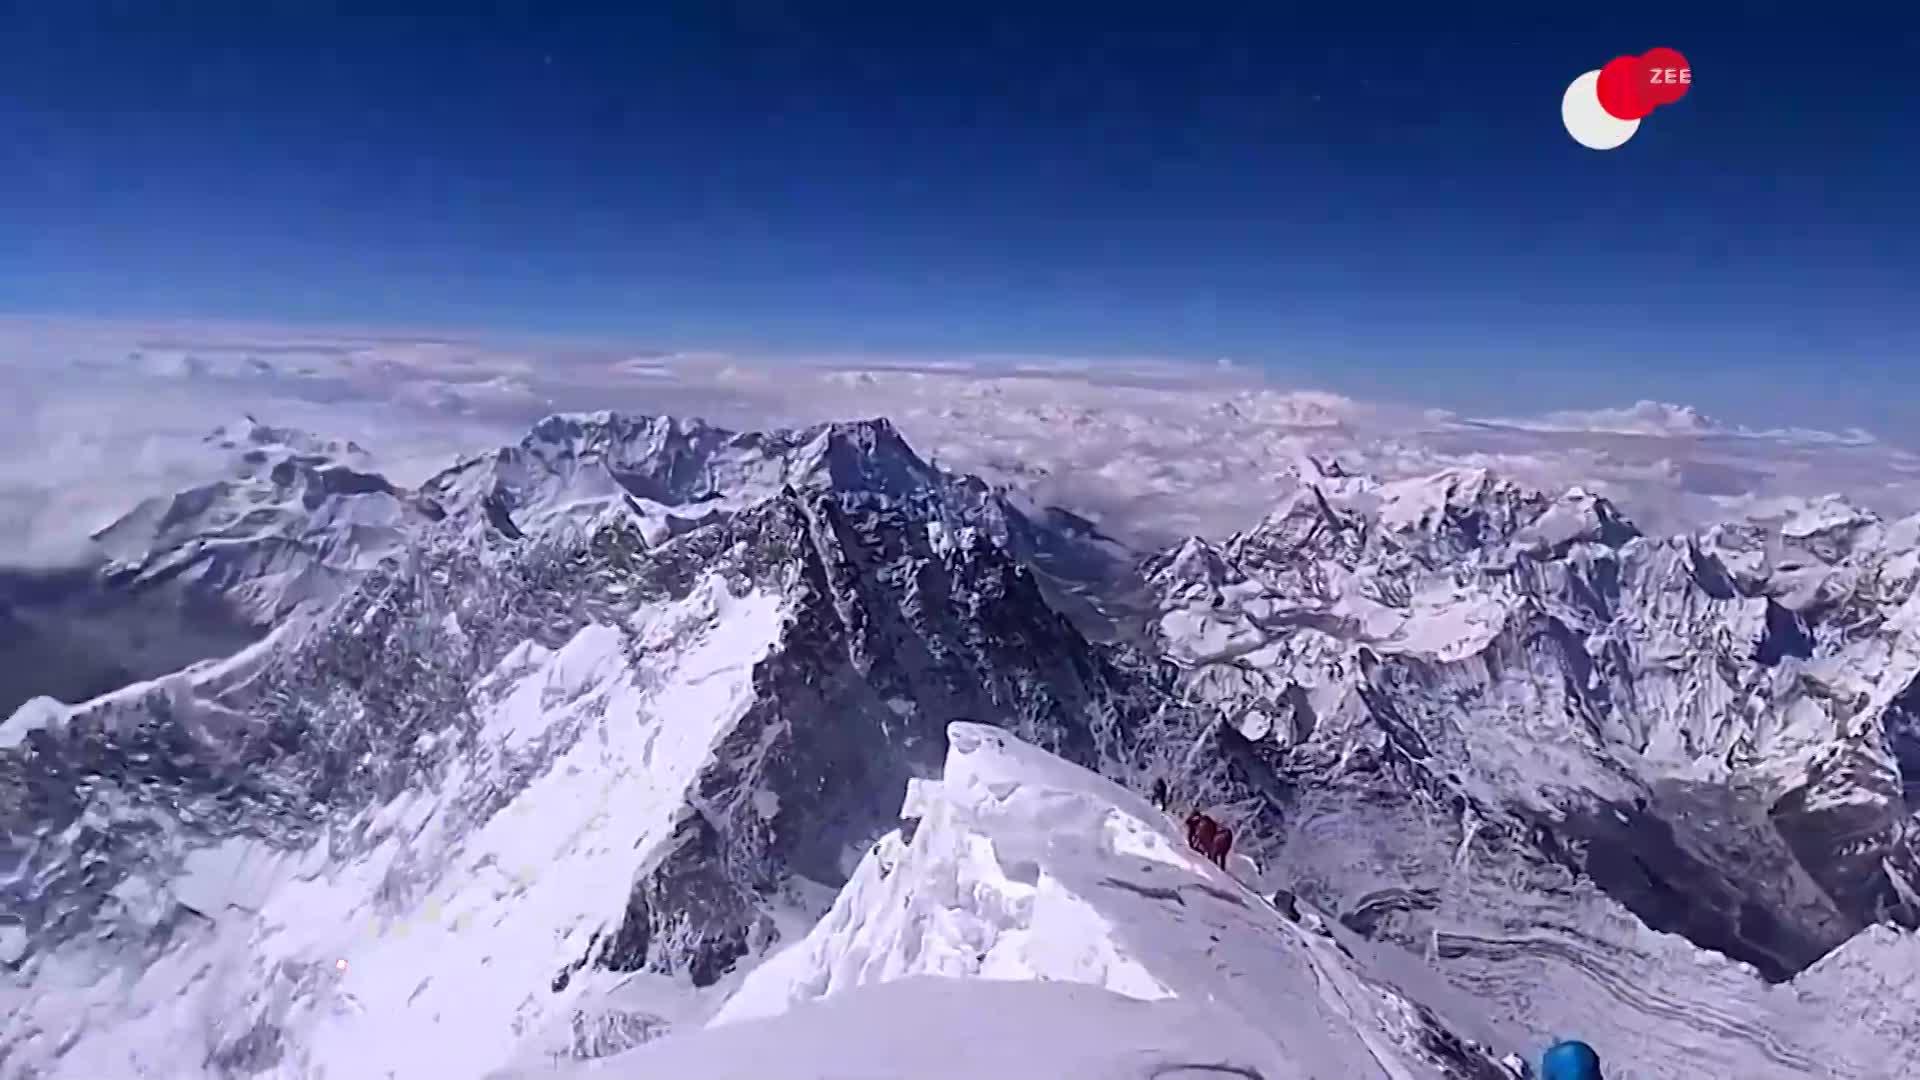 गंदगी छू रही ‘ऊंचाई’, माउंट एवरेस्ट समेत 4 पहाड़ियों पर मिला 34 टन कचरा